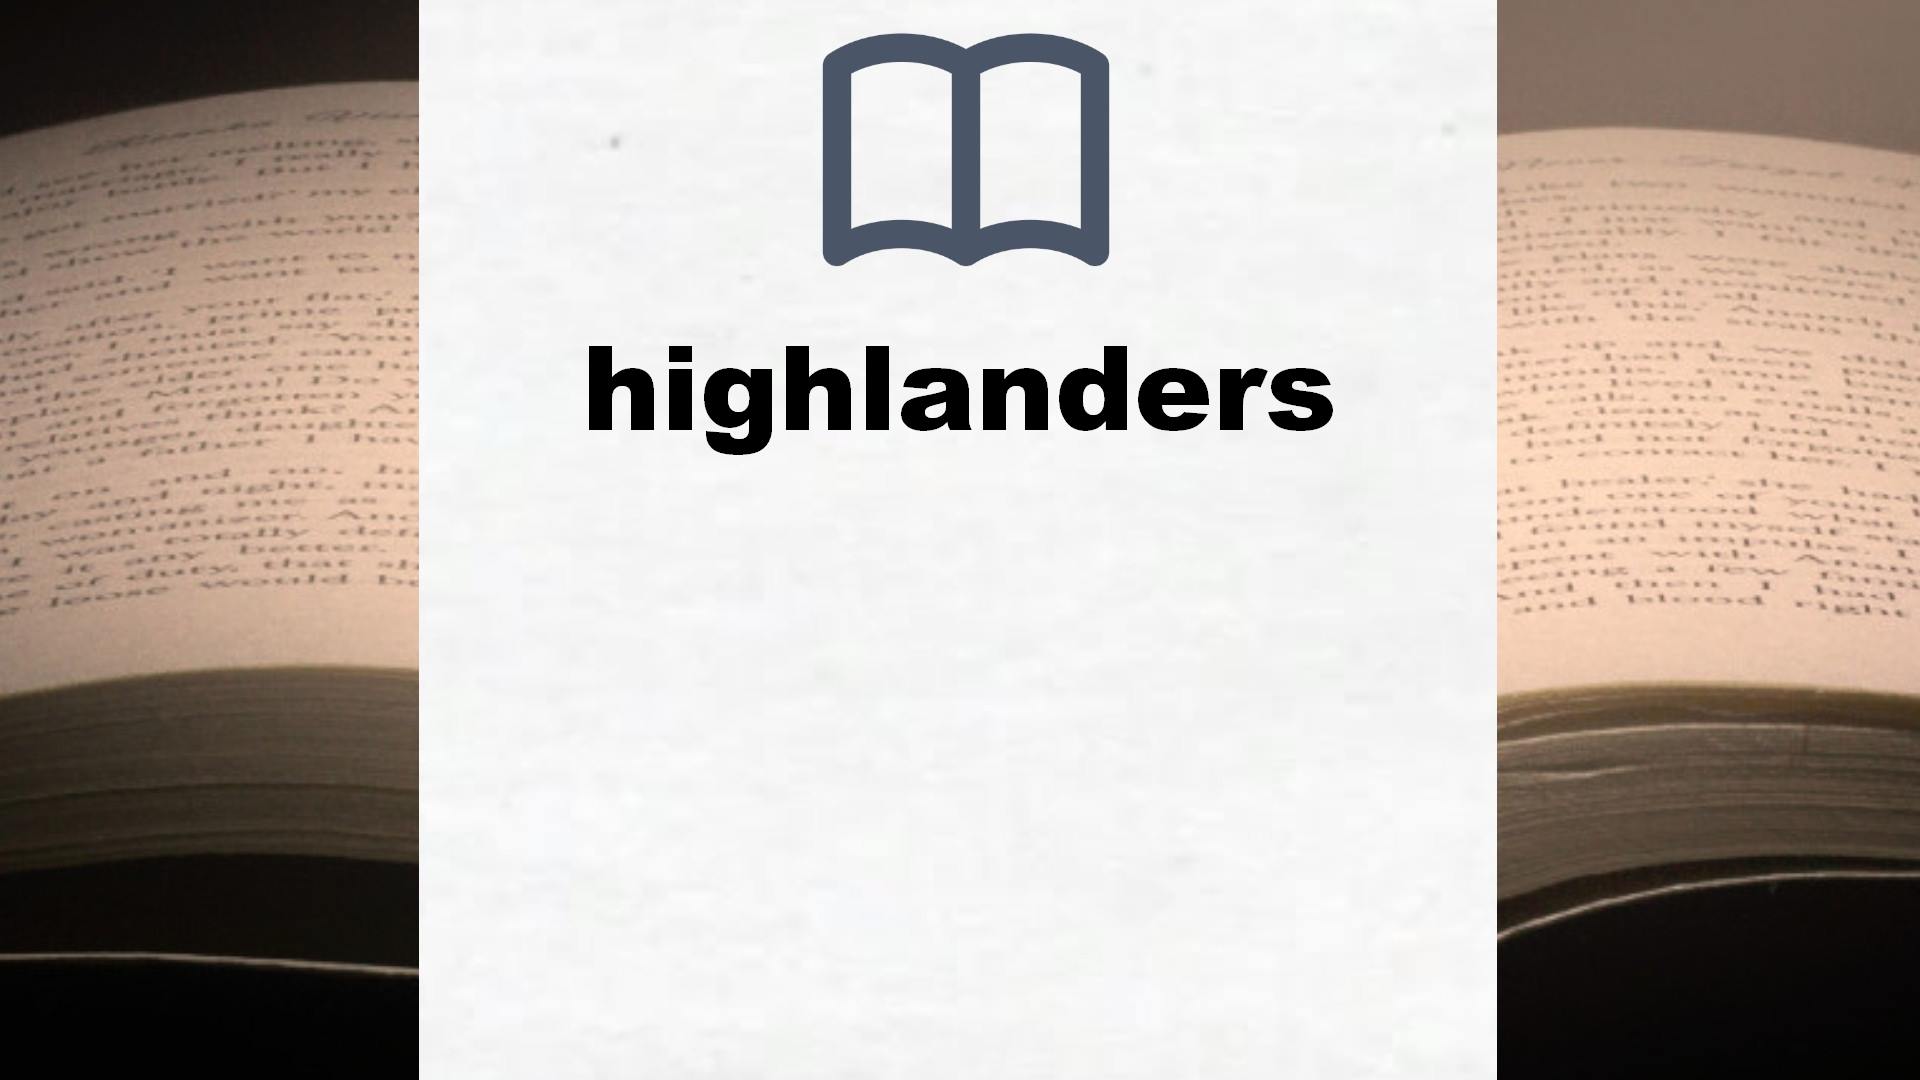 Libros sobre highlanders